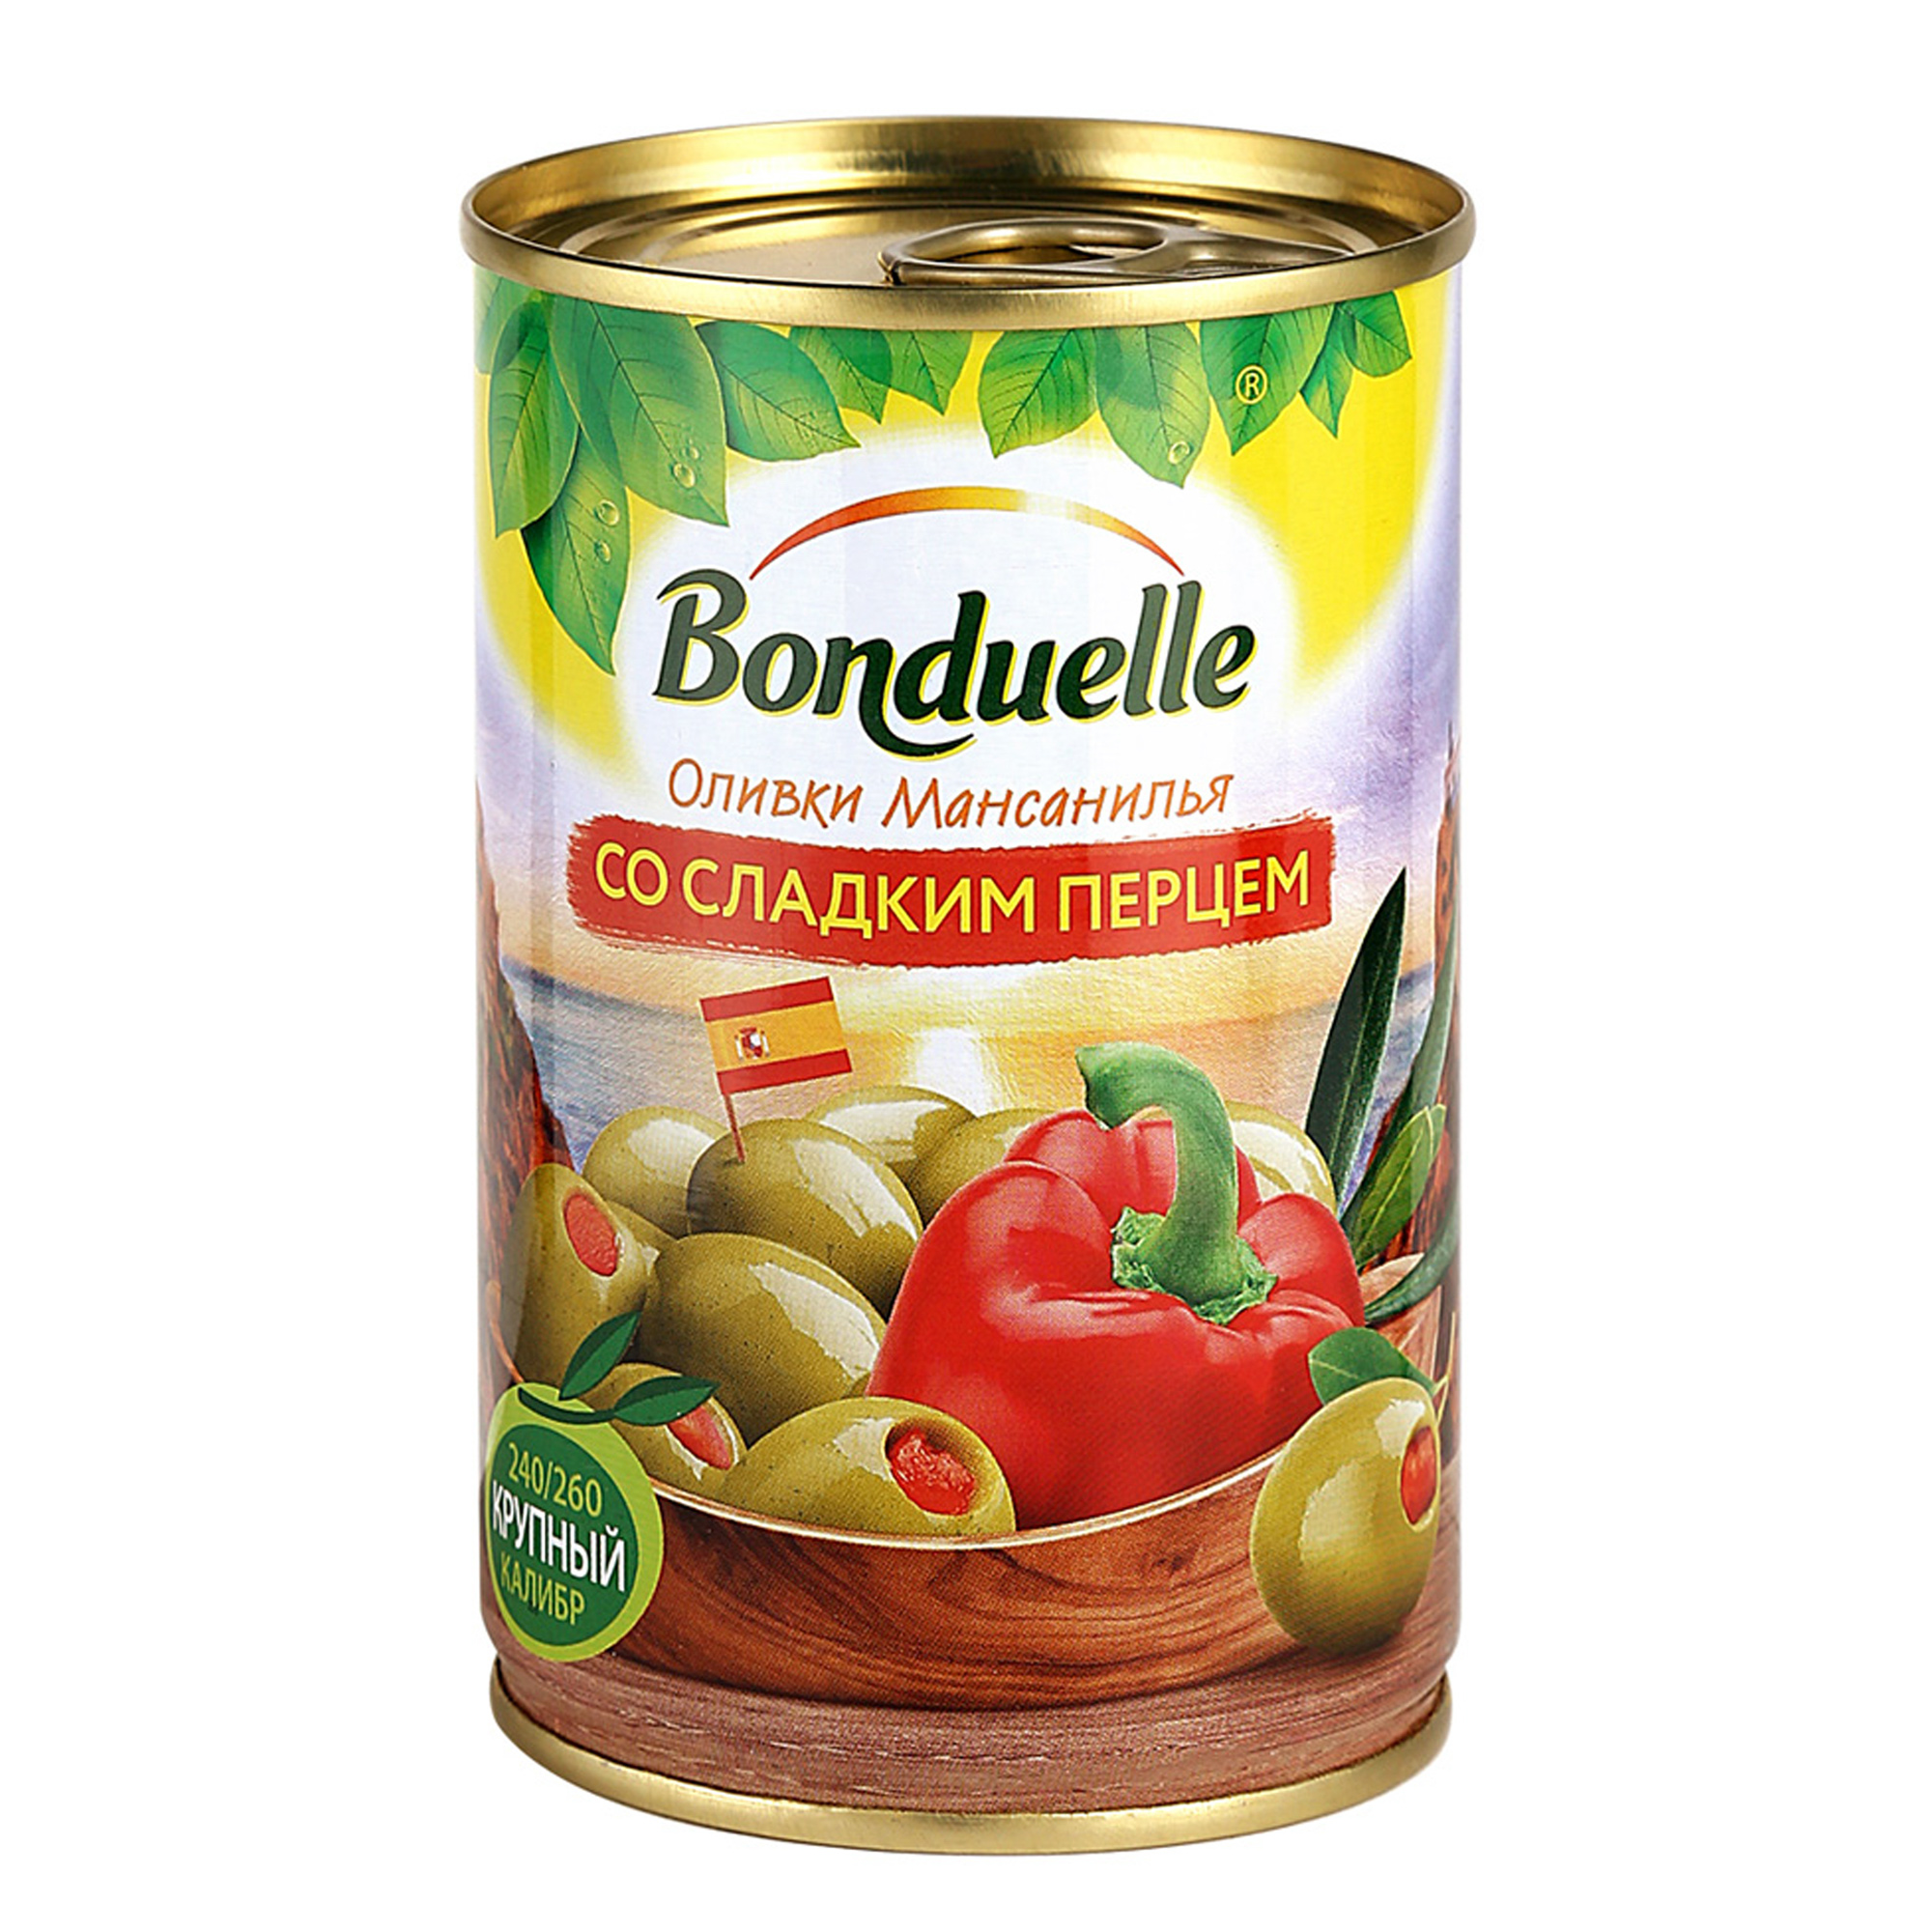 Оливки Bonduelle со сладким перцем 314 г оливки зеленые ece без косточки гриль в масле 300 г